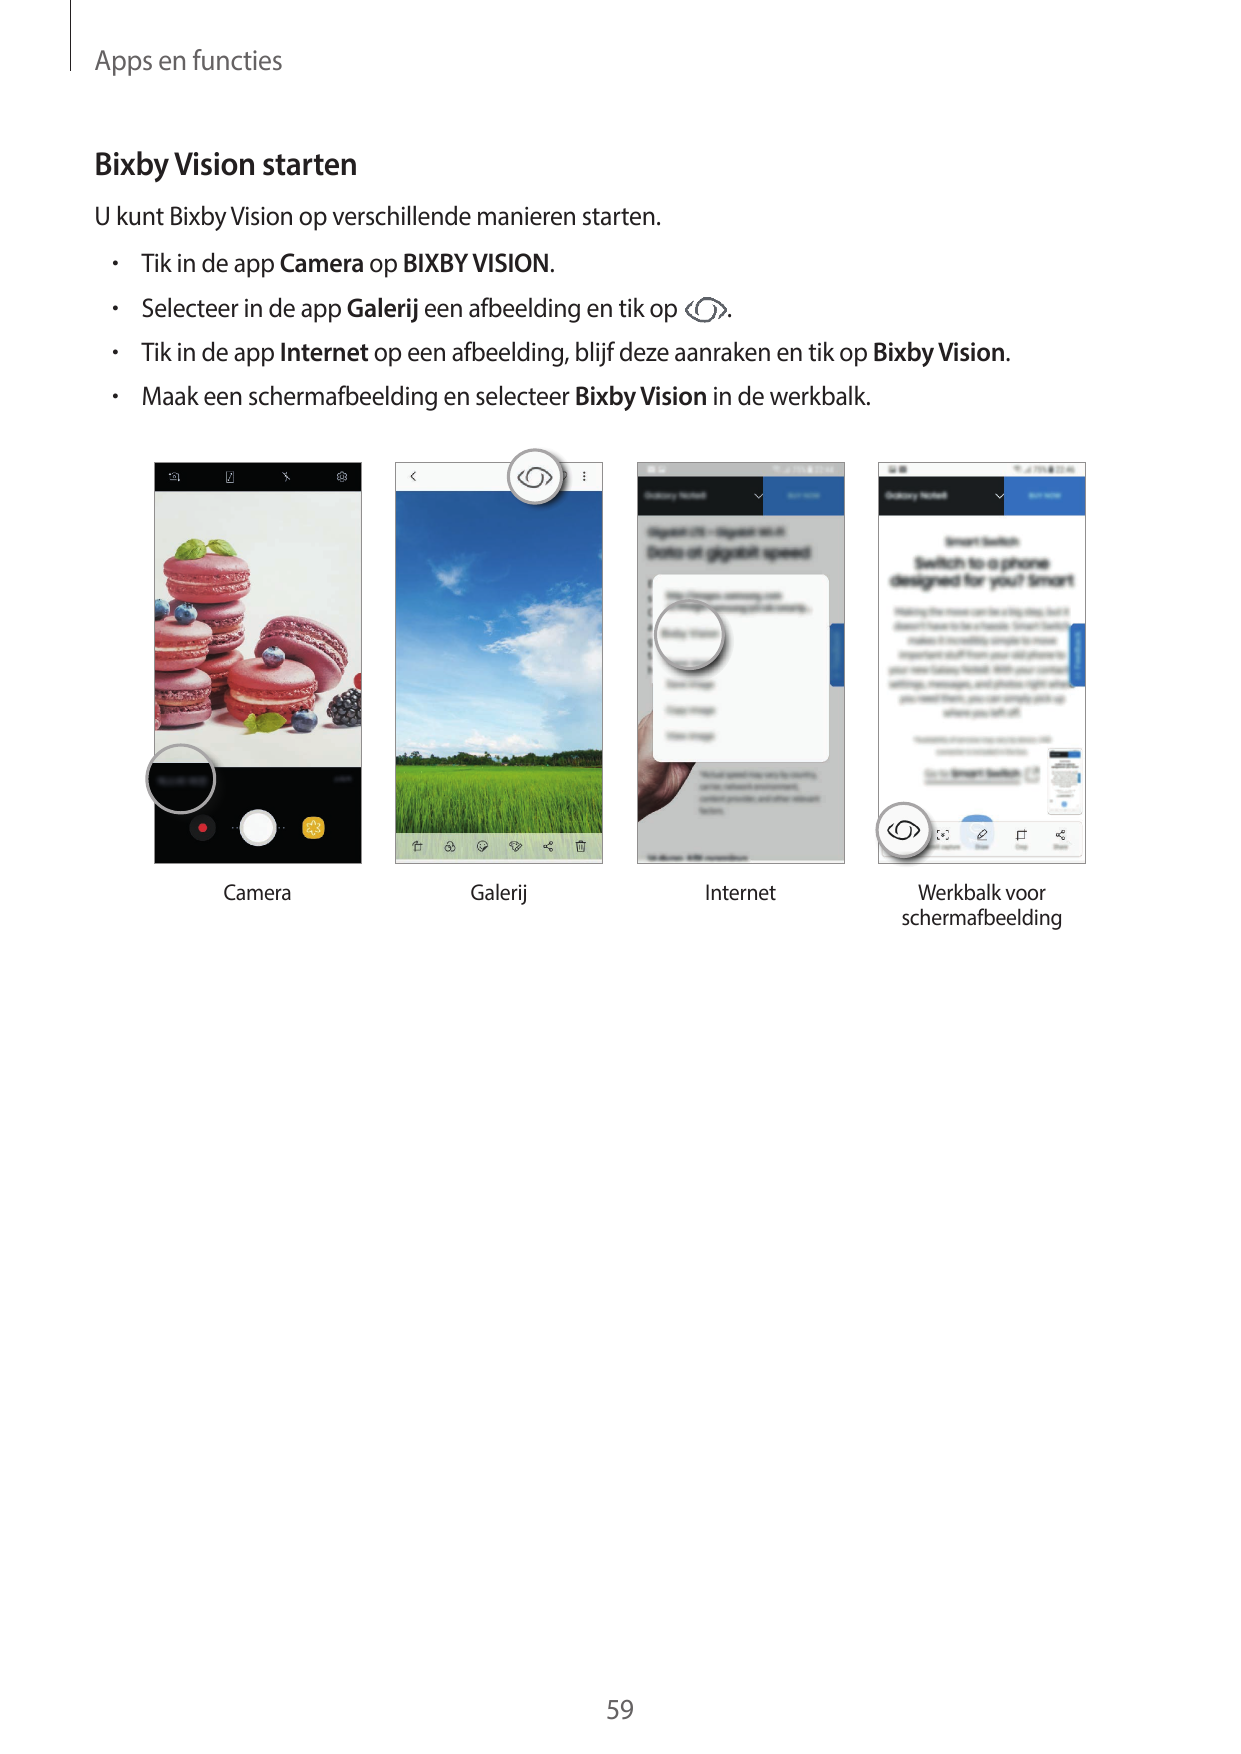 Apps en functiesBixby Vision startenU kunt Bixby Vision op verschillende manieren starten.• Tik in de app Camera op BIXBY VISION